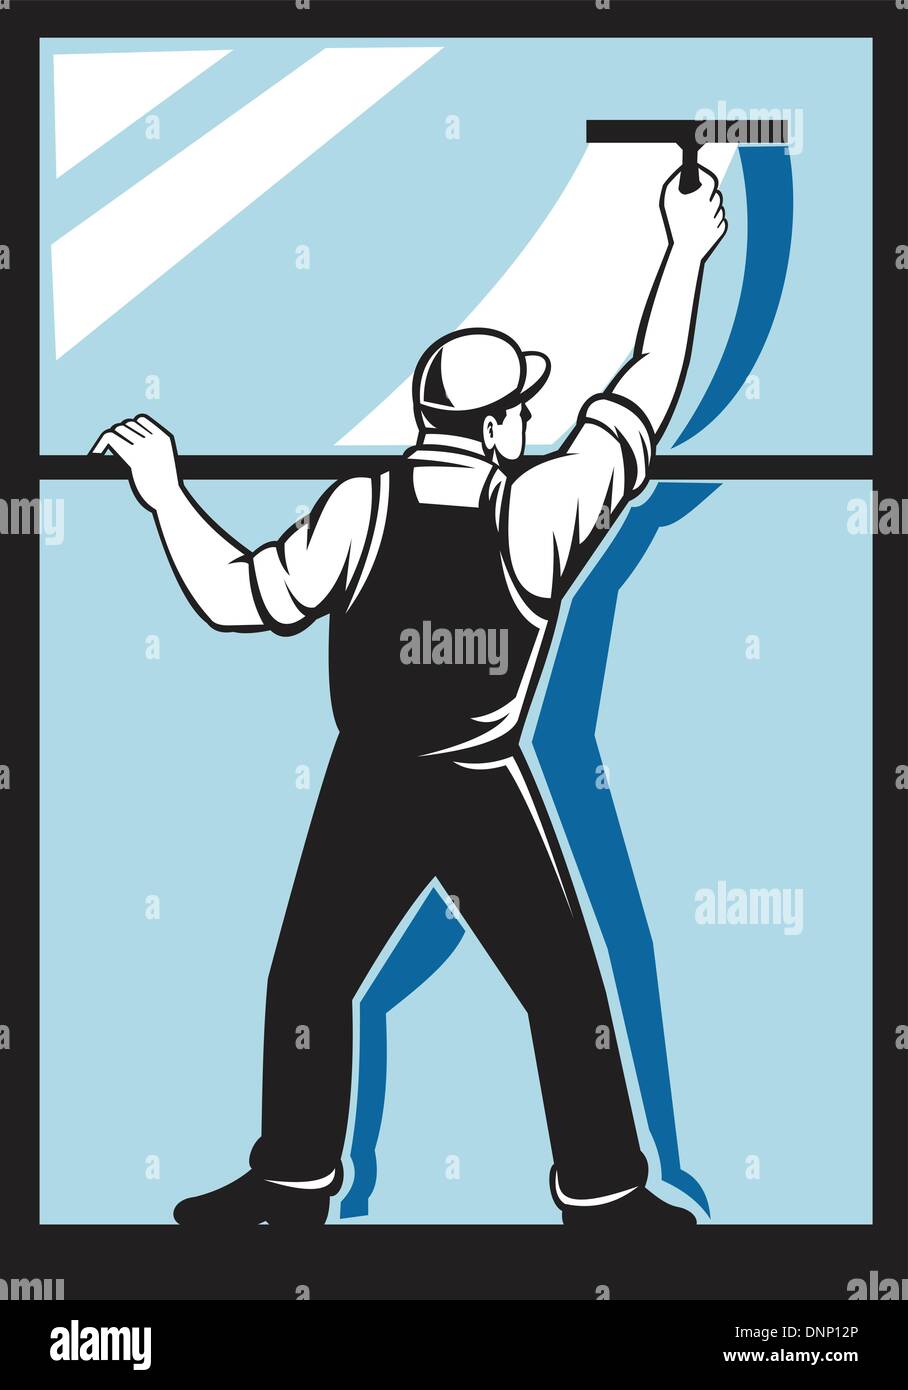 Abbildung eines Fenster Scheibe Arbeitnehmers waschen gesehen von hinten getan im retro-Stil Stock Vektor